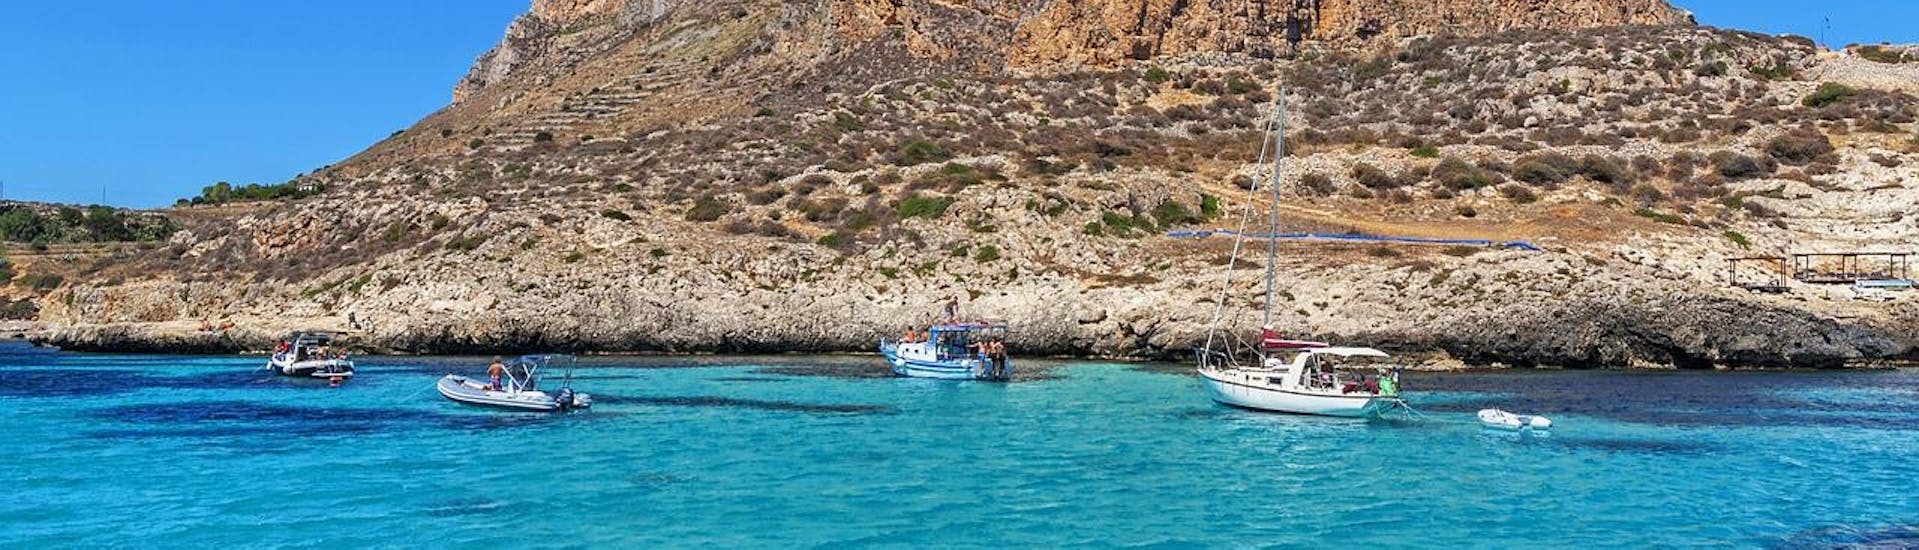 Atemberaubende Kulisse des Ägadischen Archipels während einer Bootstour von San Vito Lo Capo nach Favignana und Levanzo.